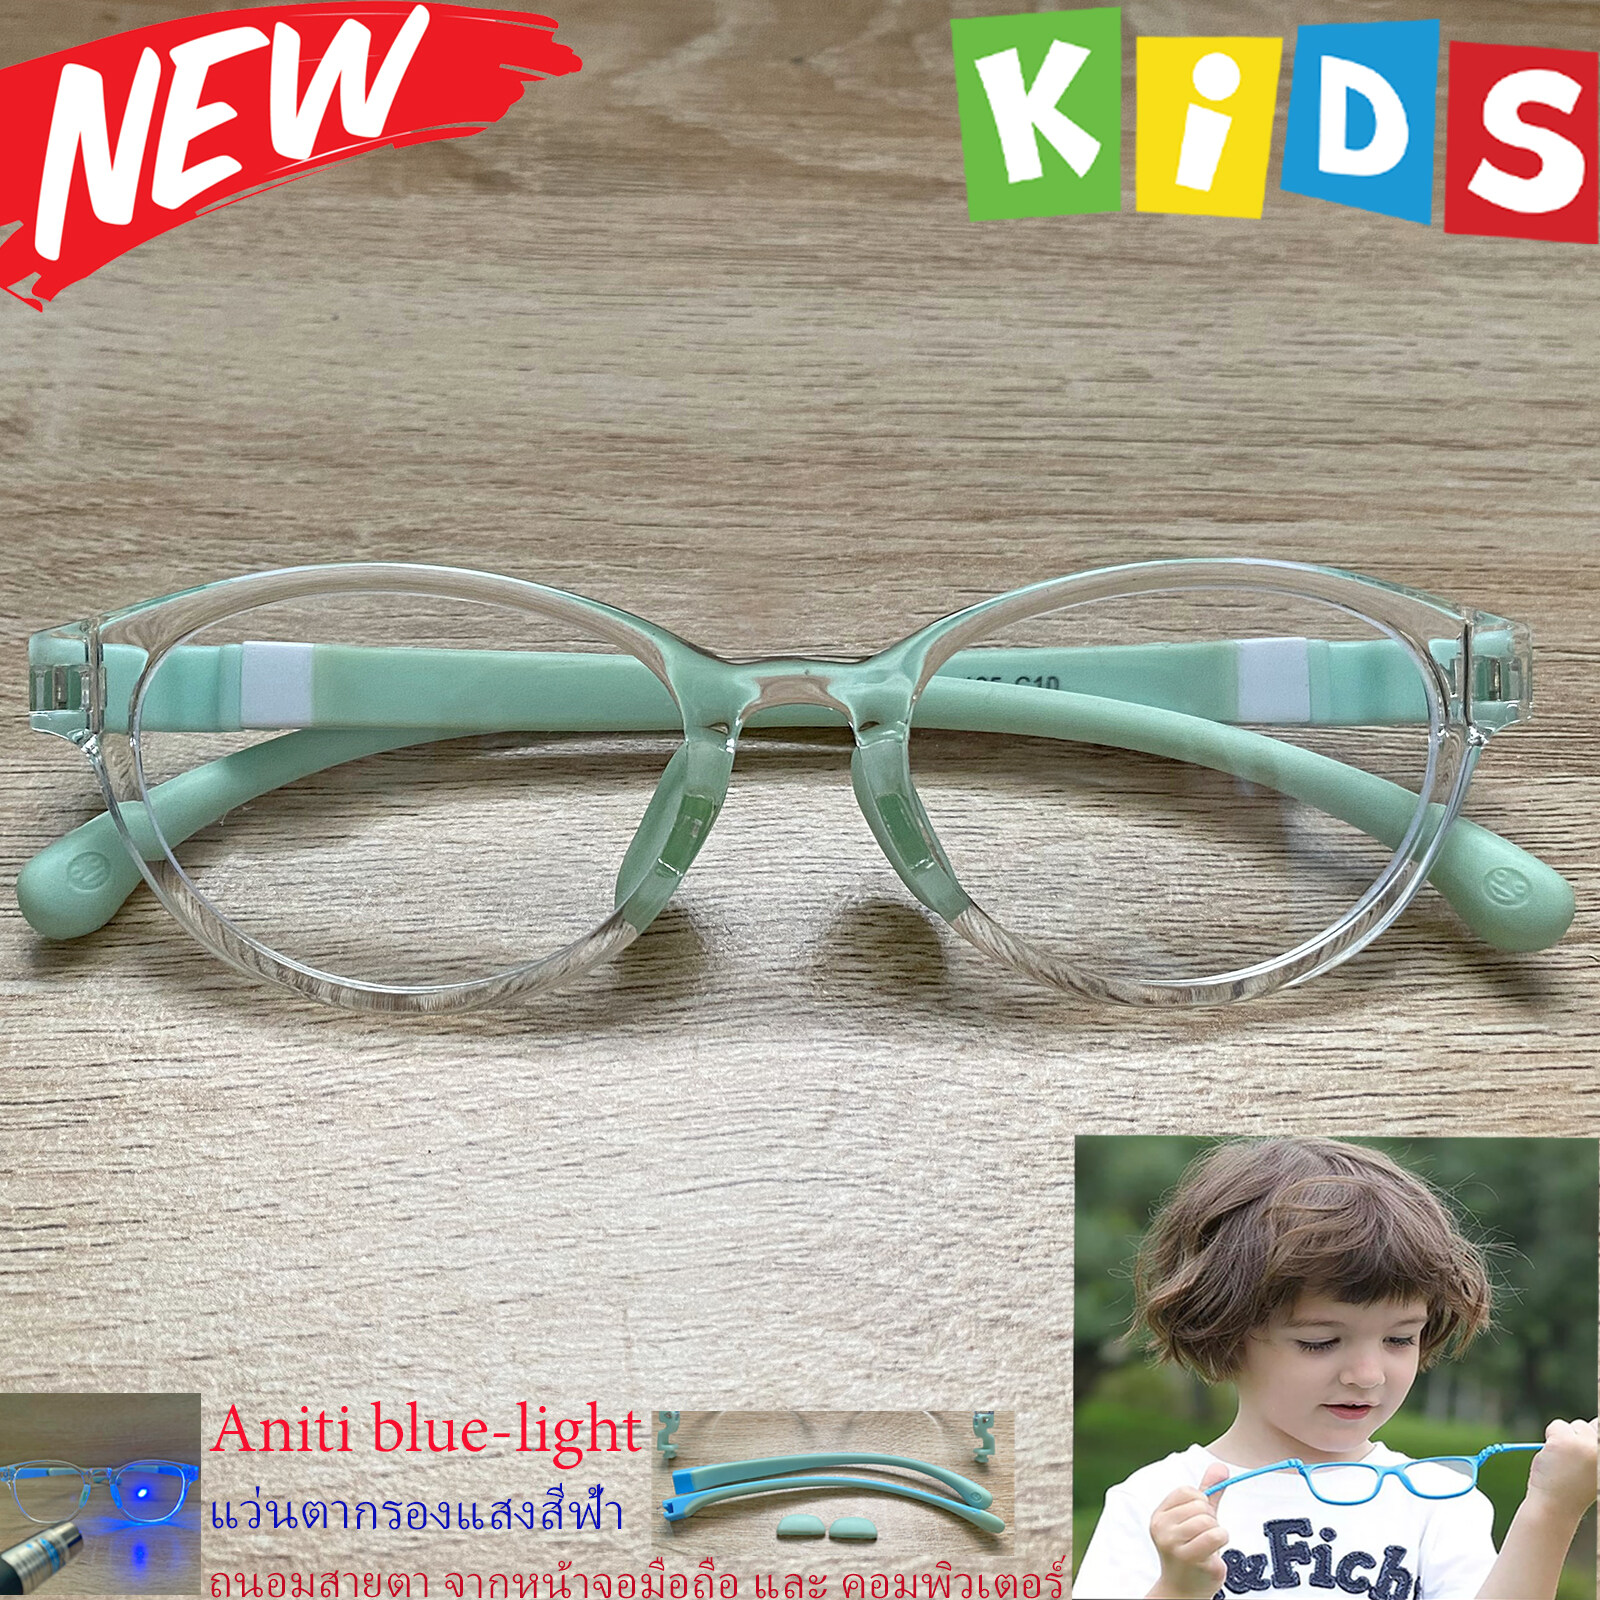 แว่นตาเด็ก กรองแสงสีฟ้า blue block แว่นเด็ก บลูบล็อค รุ่น 05 กรอบใส ขาข้อต่อยืดหยุ่น ถอดขาเปลี่ยนได้ วัสดุTR90 เหมาะสำหรับเลนส์สายตา